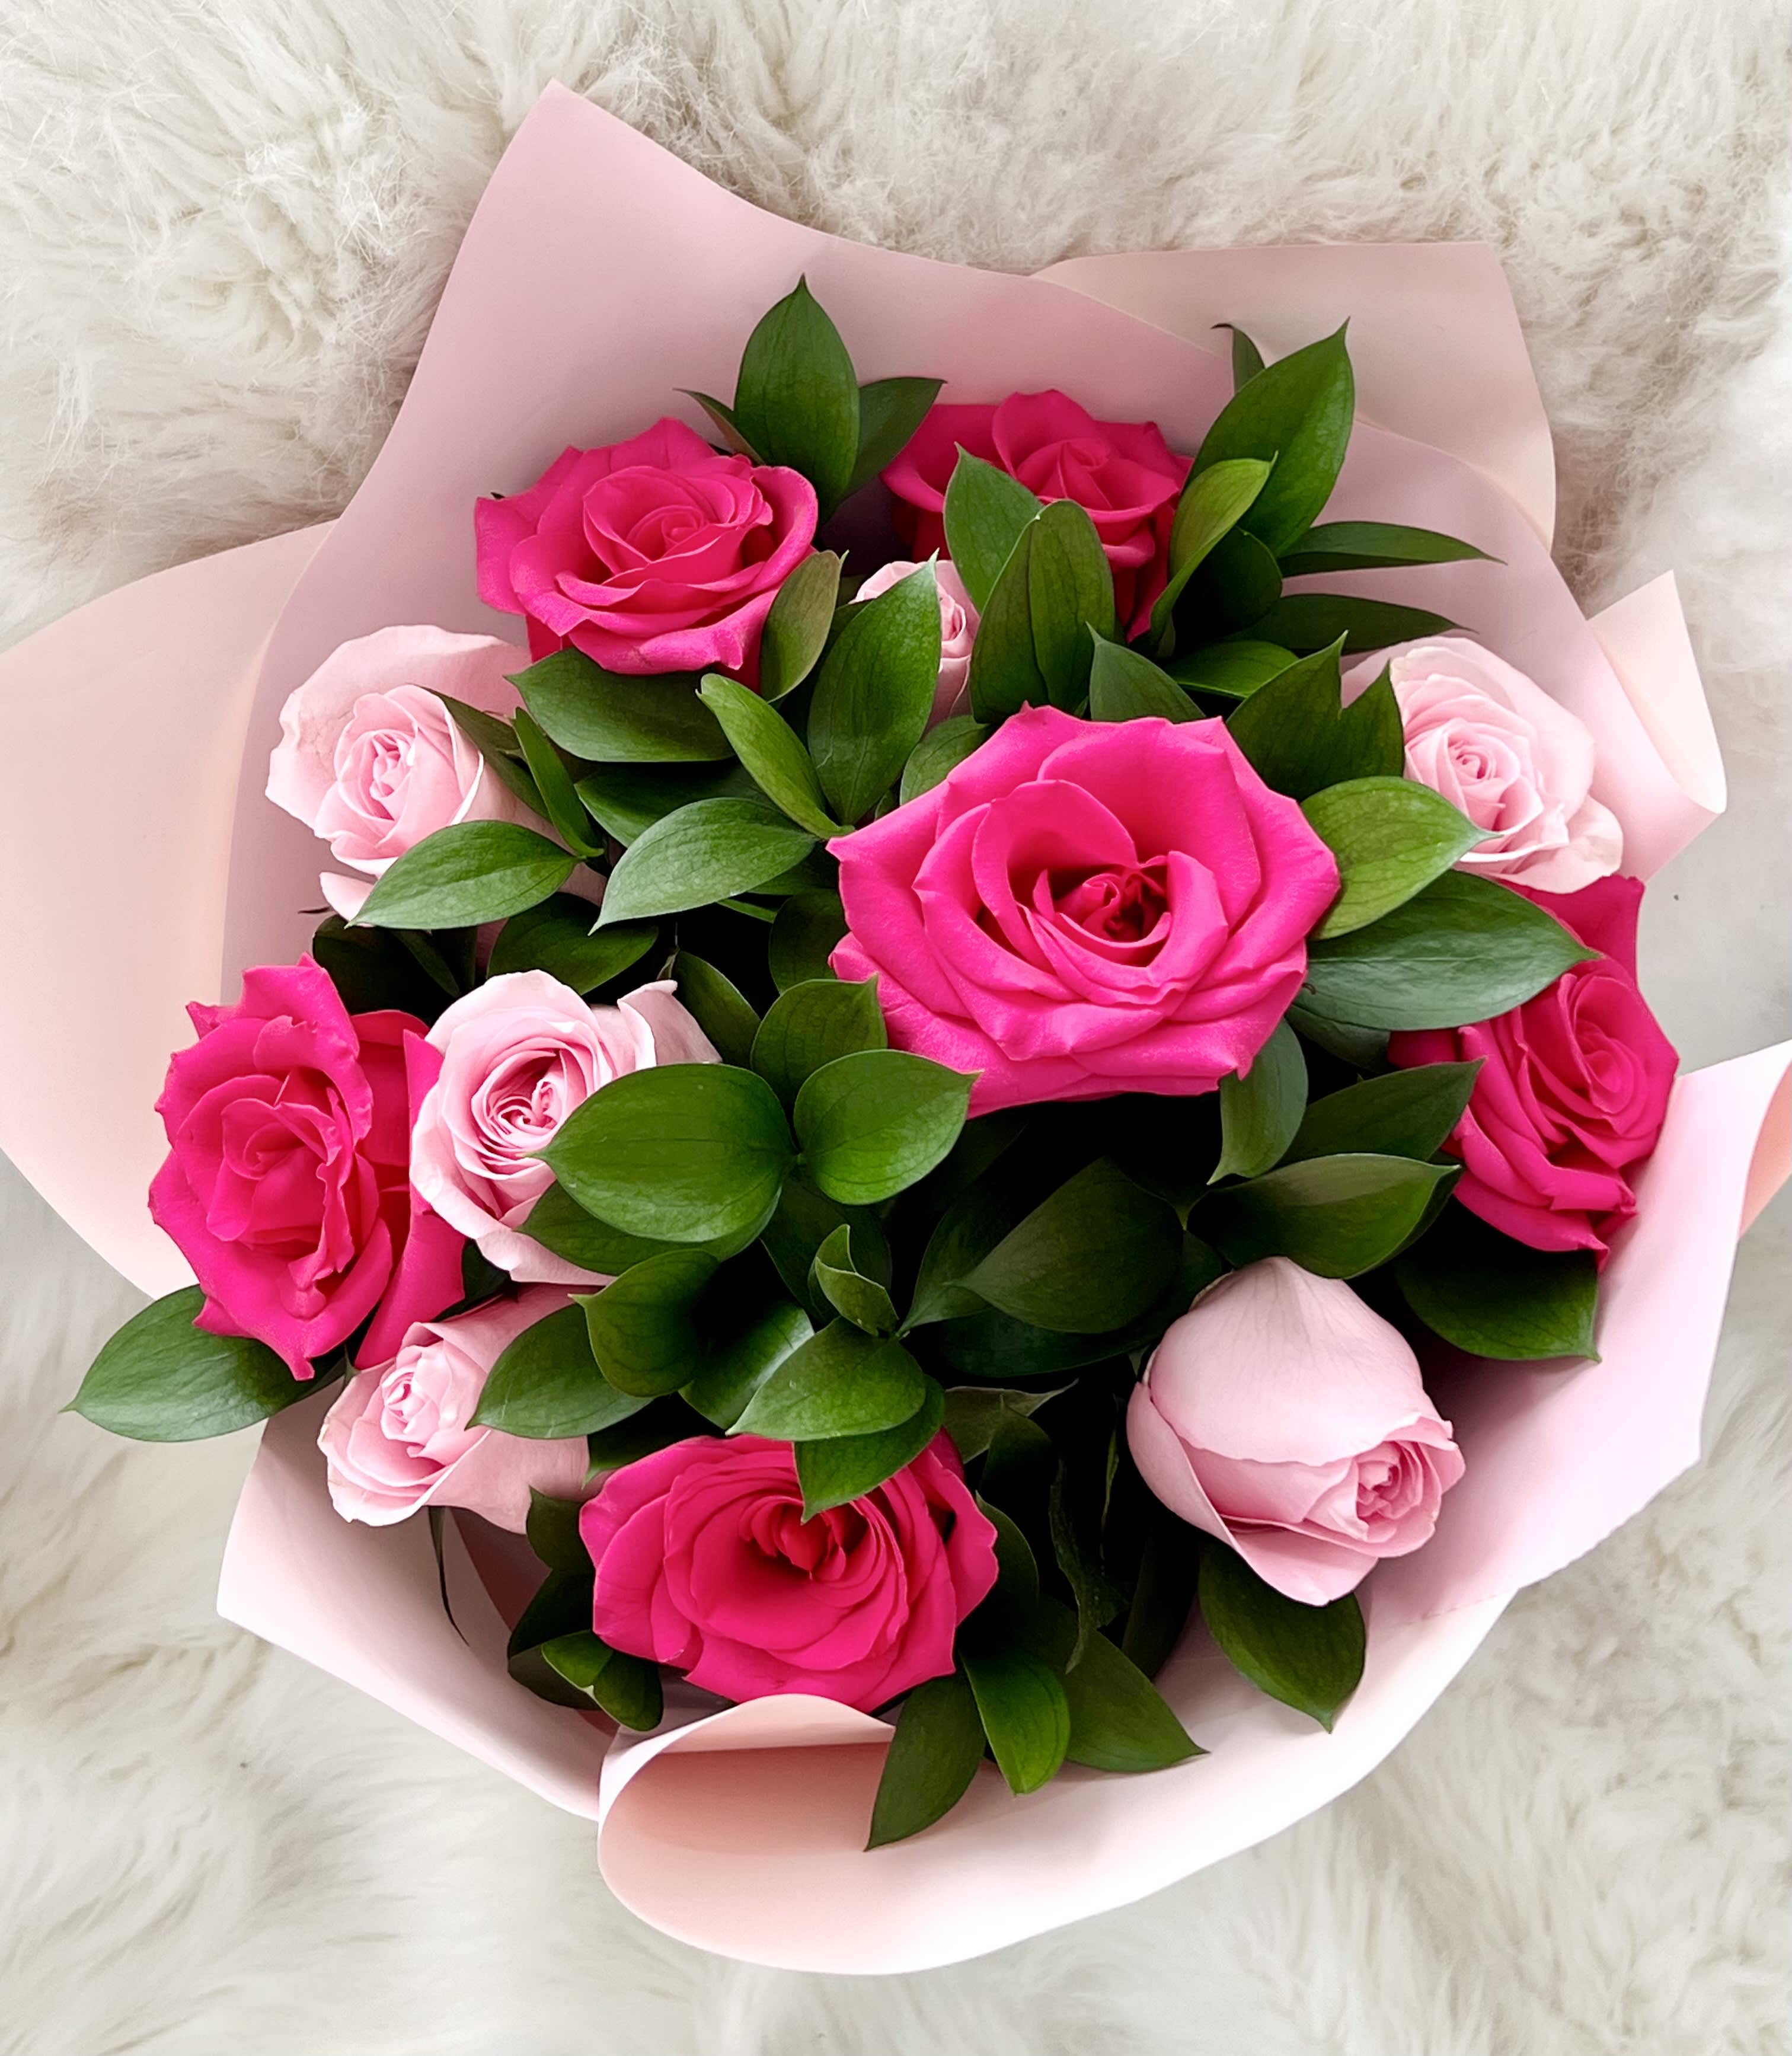 Dozen pink rose bouquet  - Dozen rose bouquet wrapped in floral paper